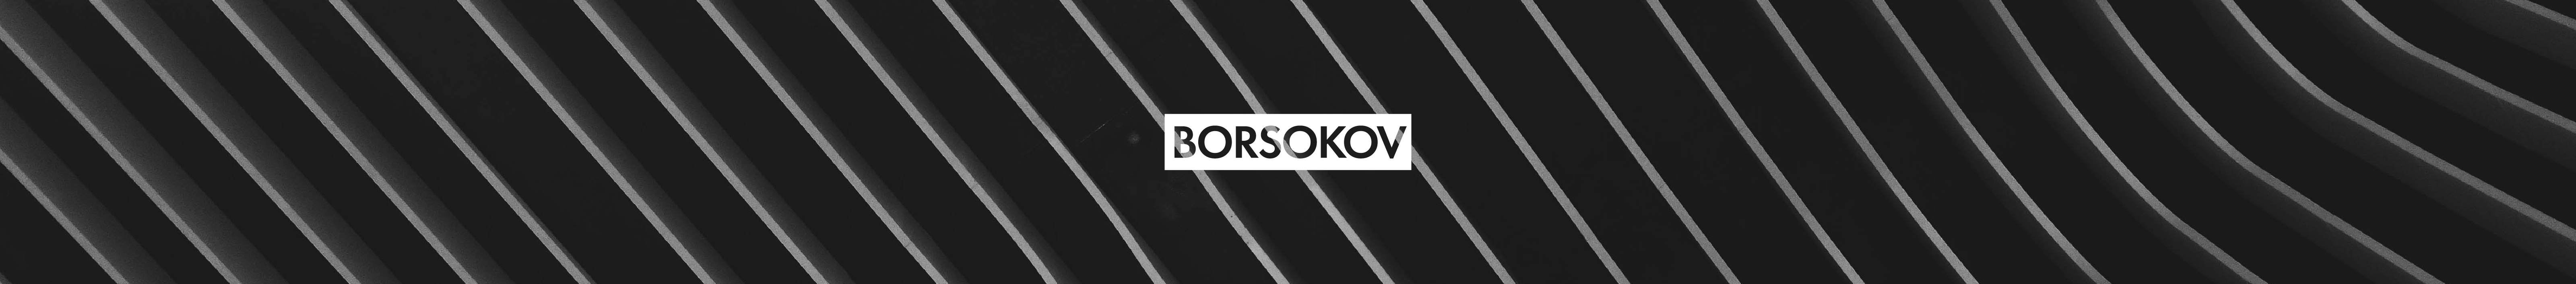 Arthur Borsokov's profile banner